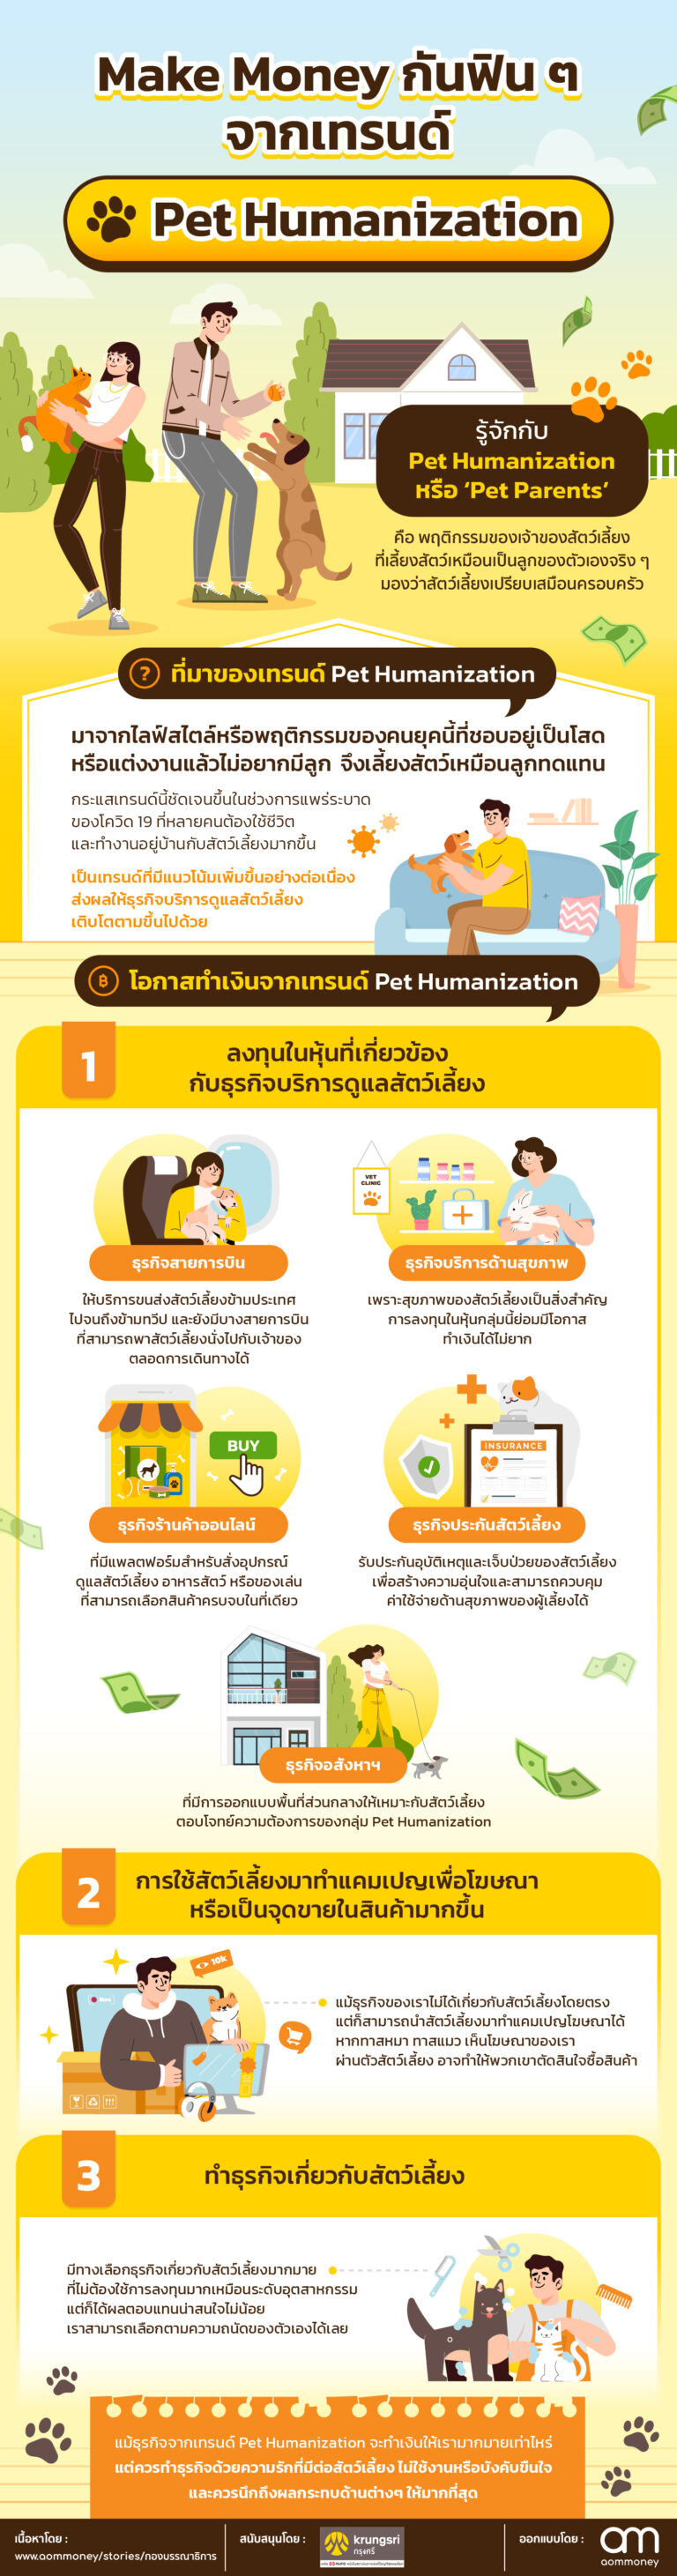 make-money-pet-humanization1